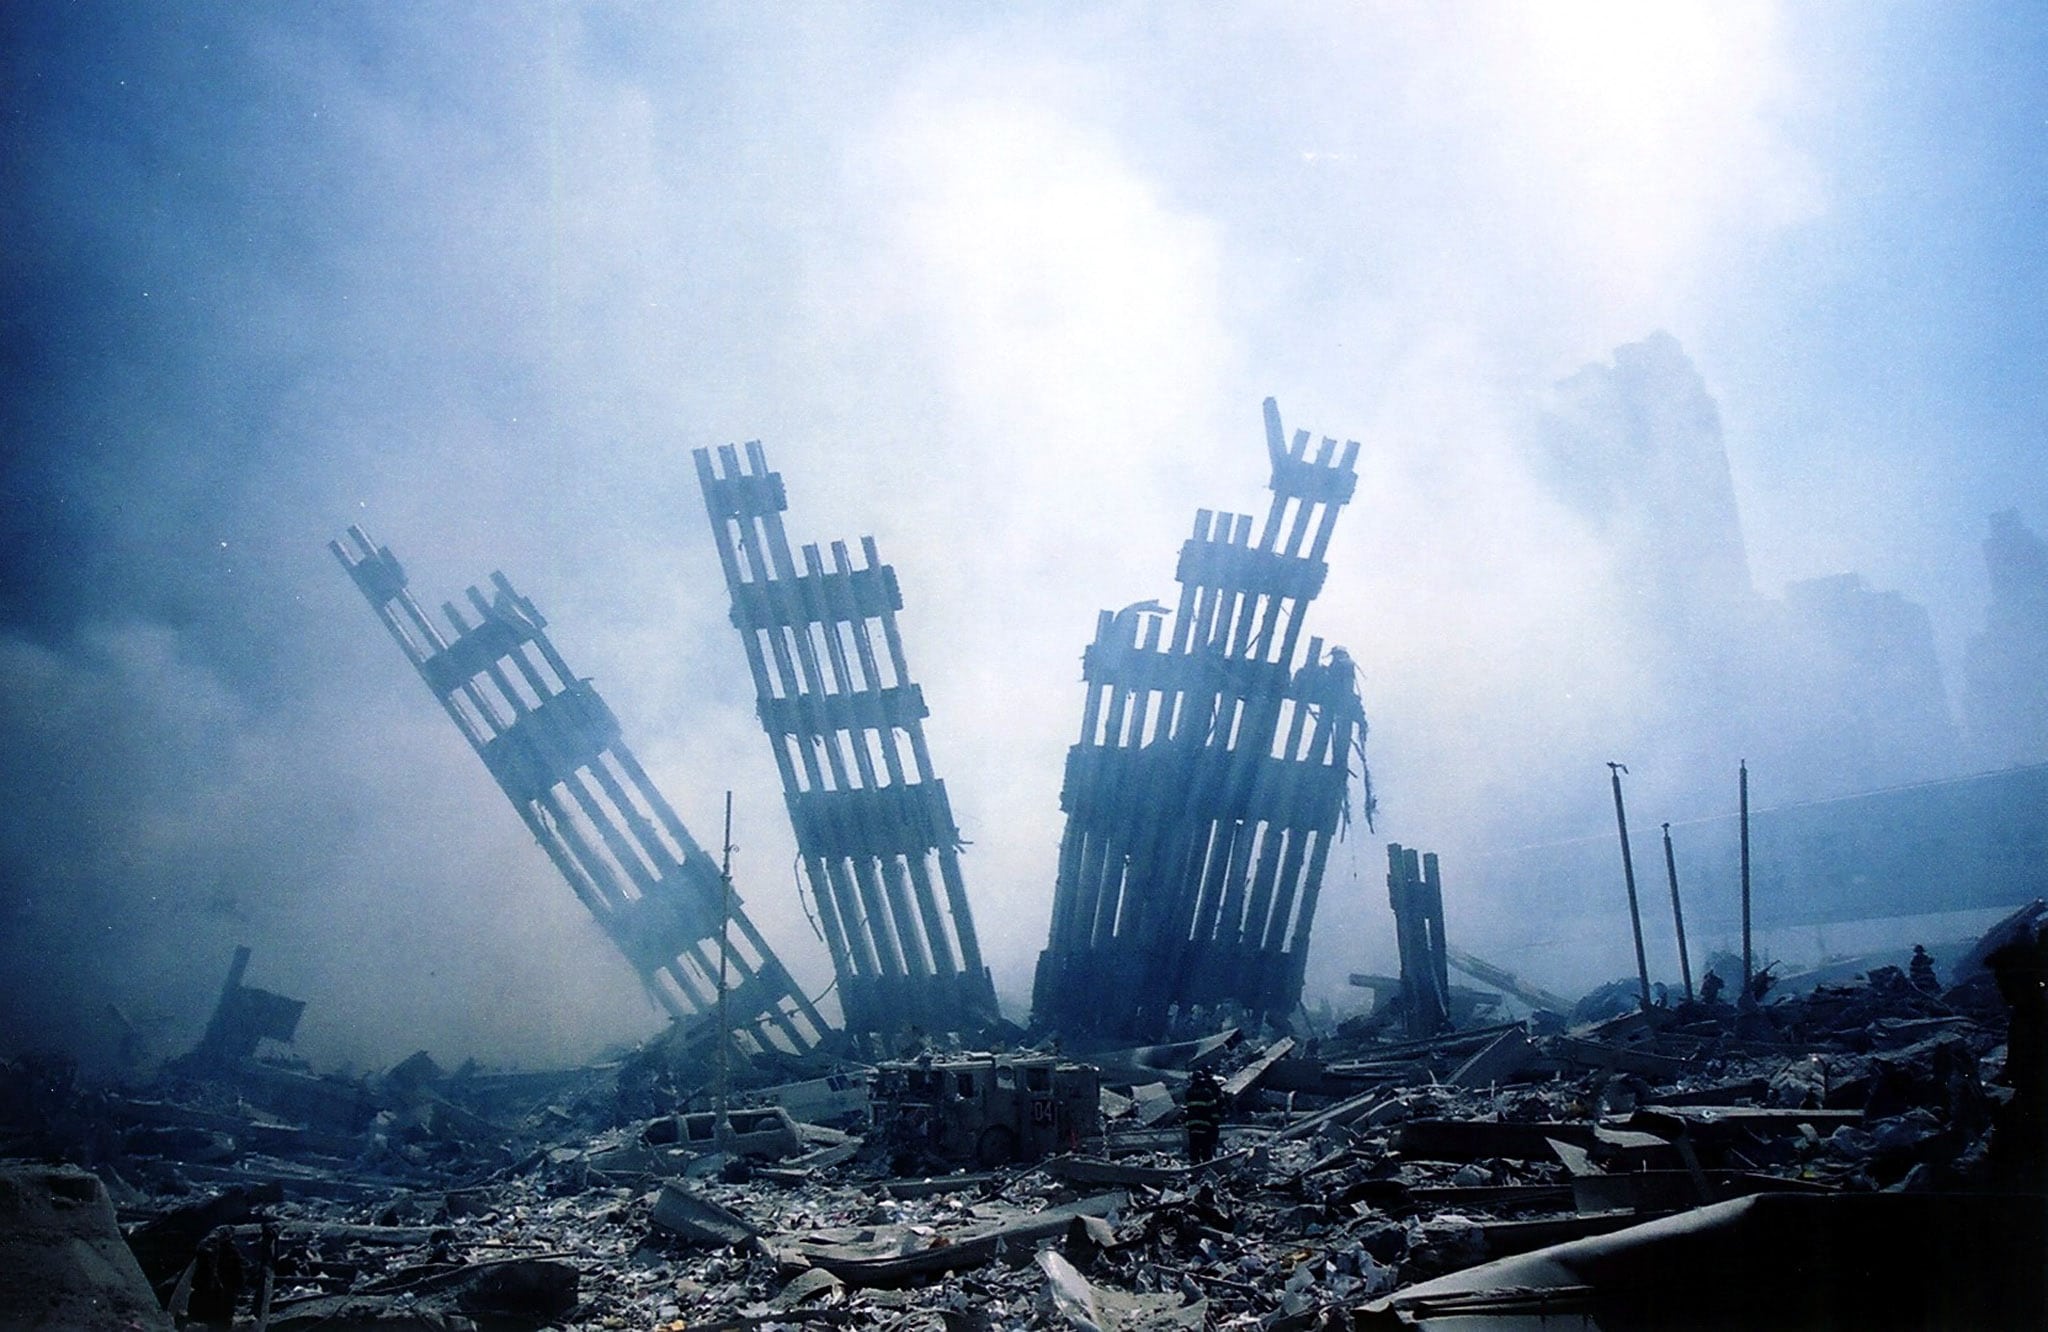 ההרס בניו יורק אחרי הפיגוע במגדלי התאומים, 11 בספטמבר 2001 (צילום: ALEXANDRE FUCHS / AFP)